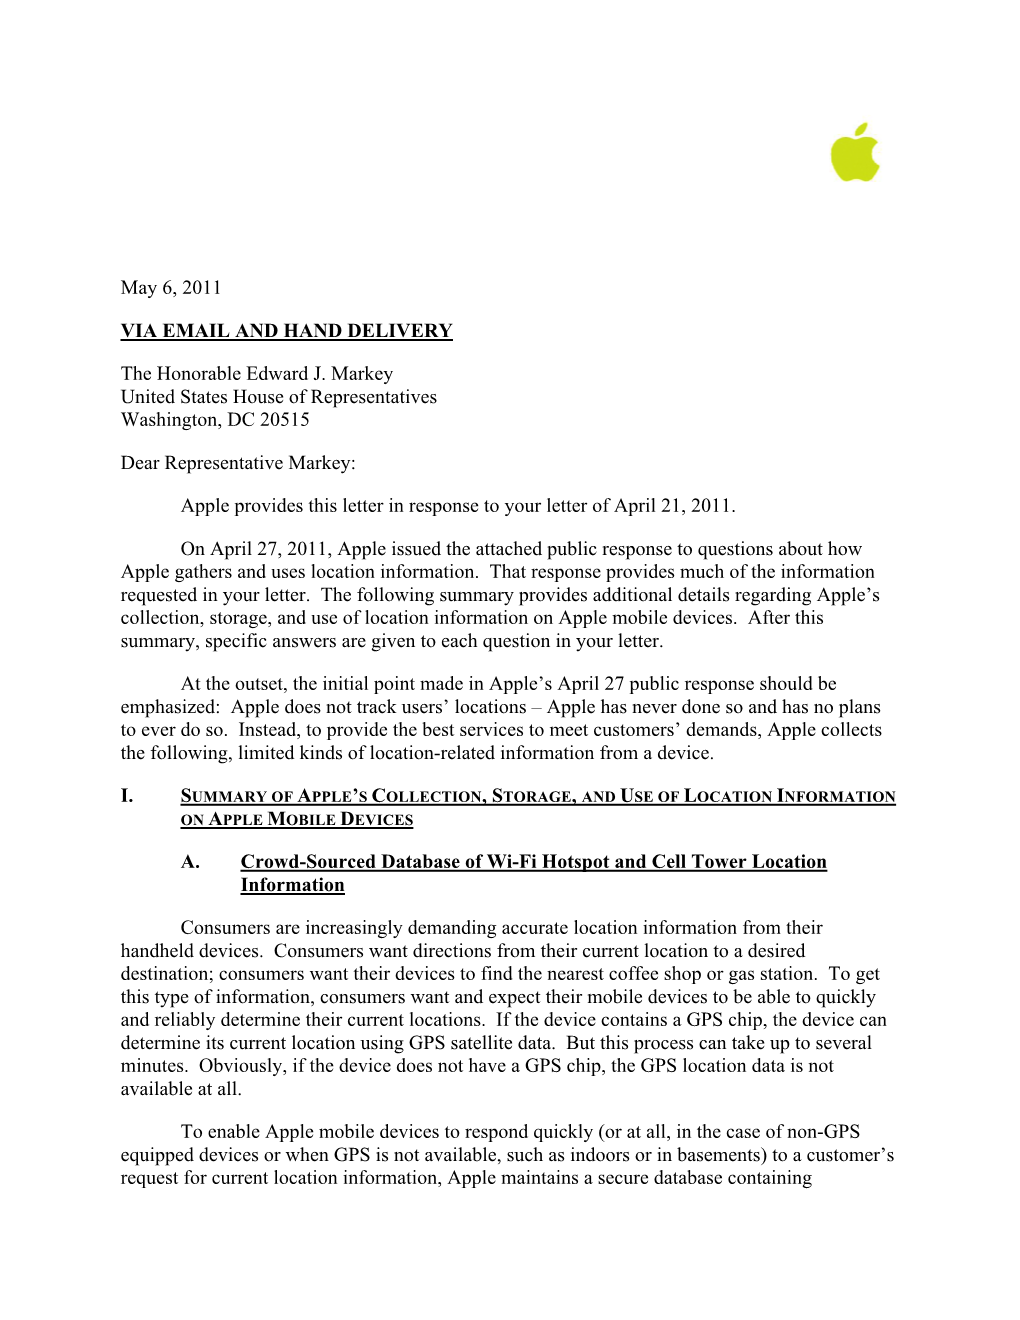 Apple Letter to Representative Markey (5-6-2011)